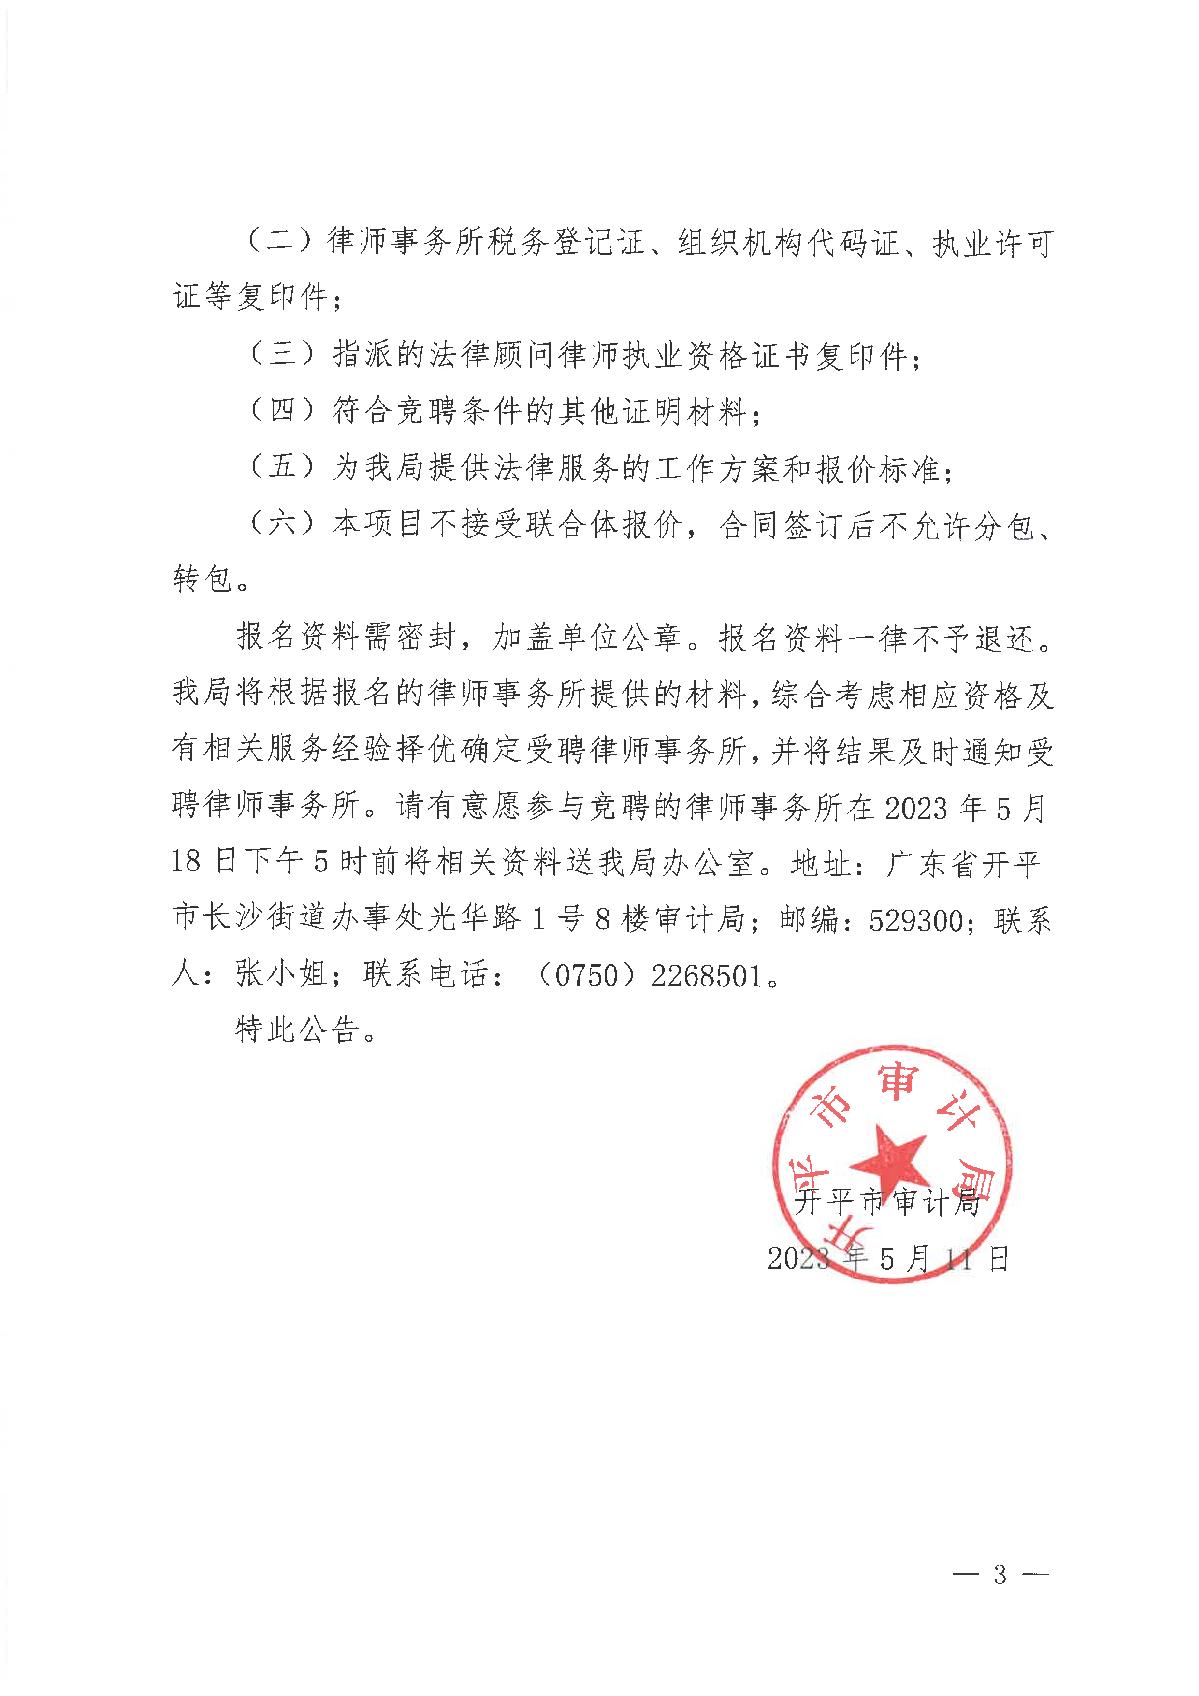 开平市审计局关于招聘政府法律顾问的公告_3.JPG